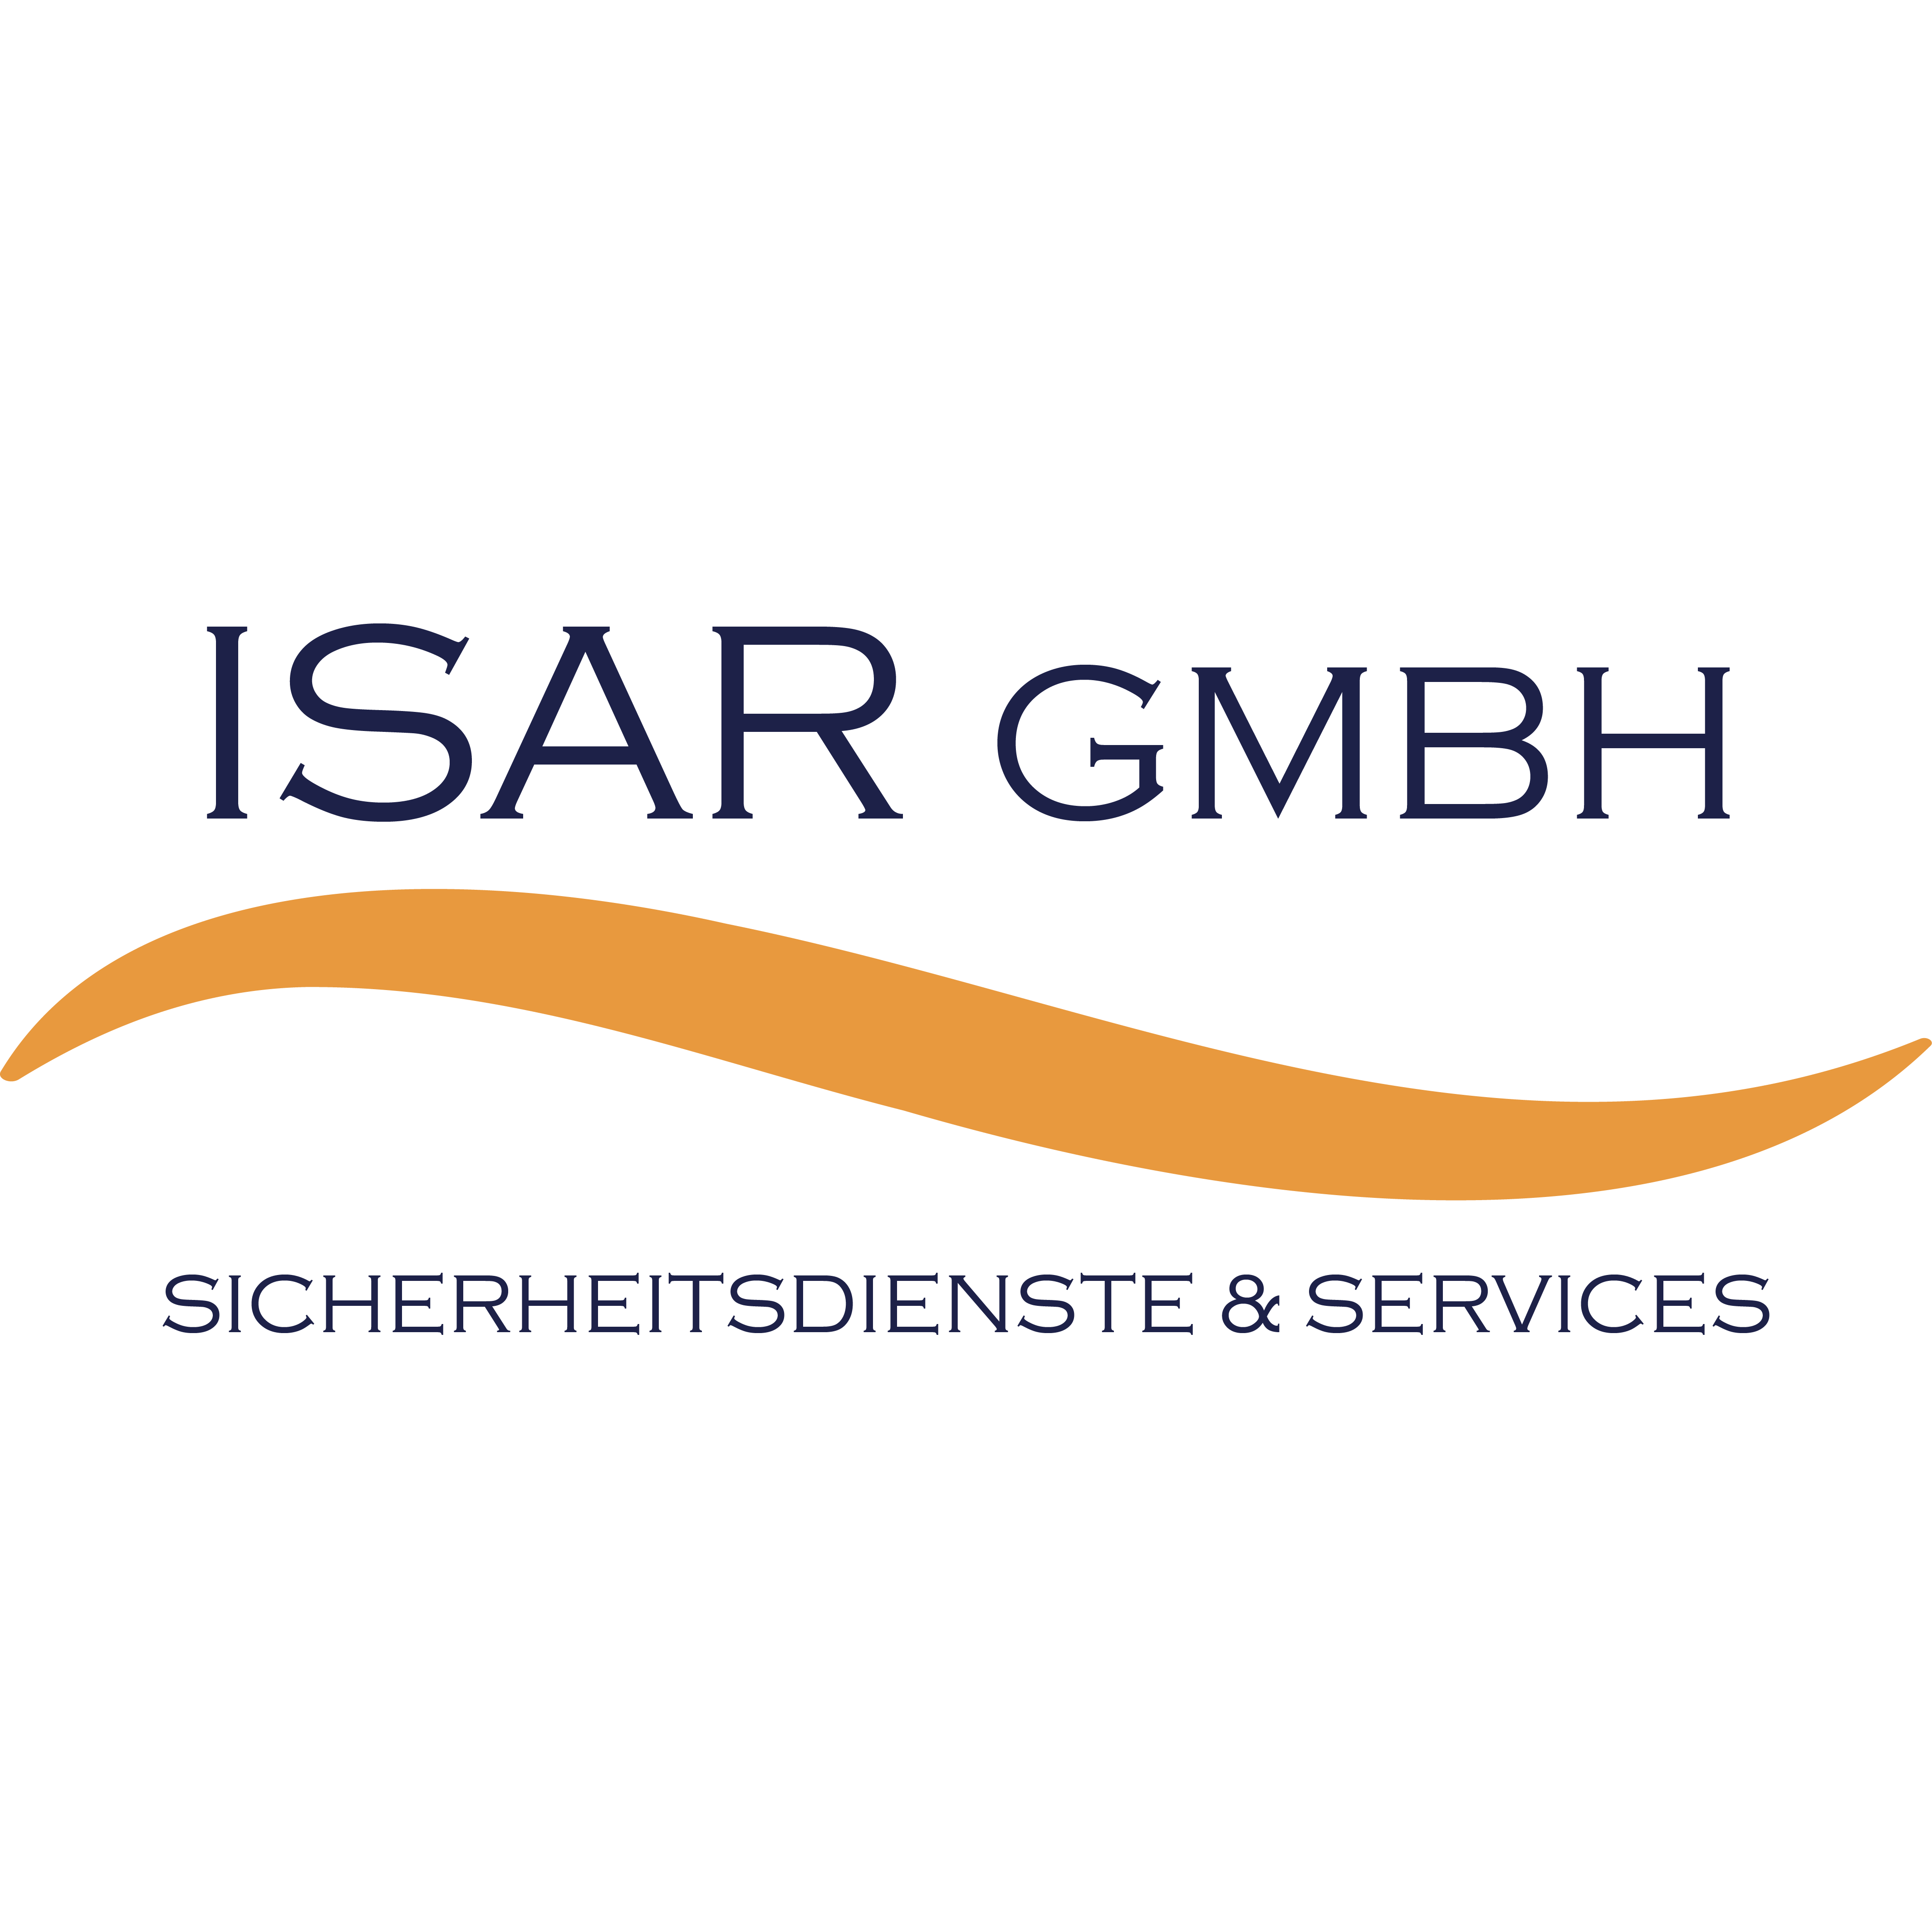 ISAR GmbH Sicherheitsdienste und Services in Grünwald Kreis München - Logo